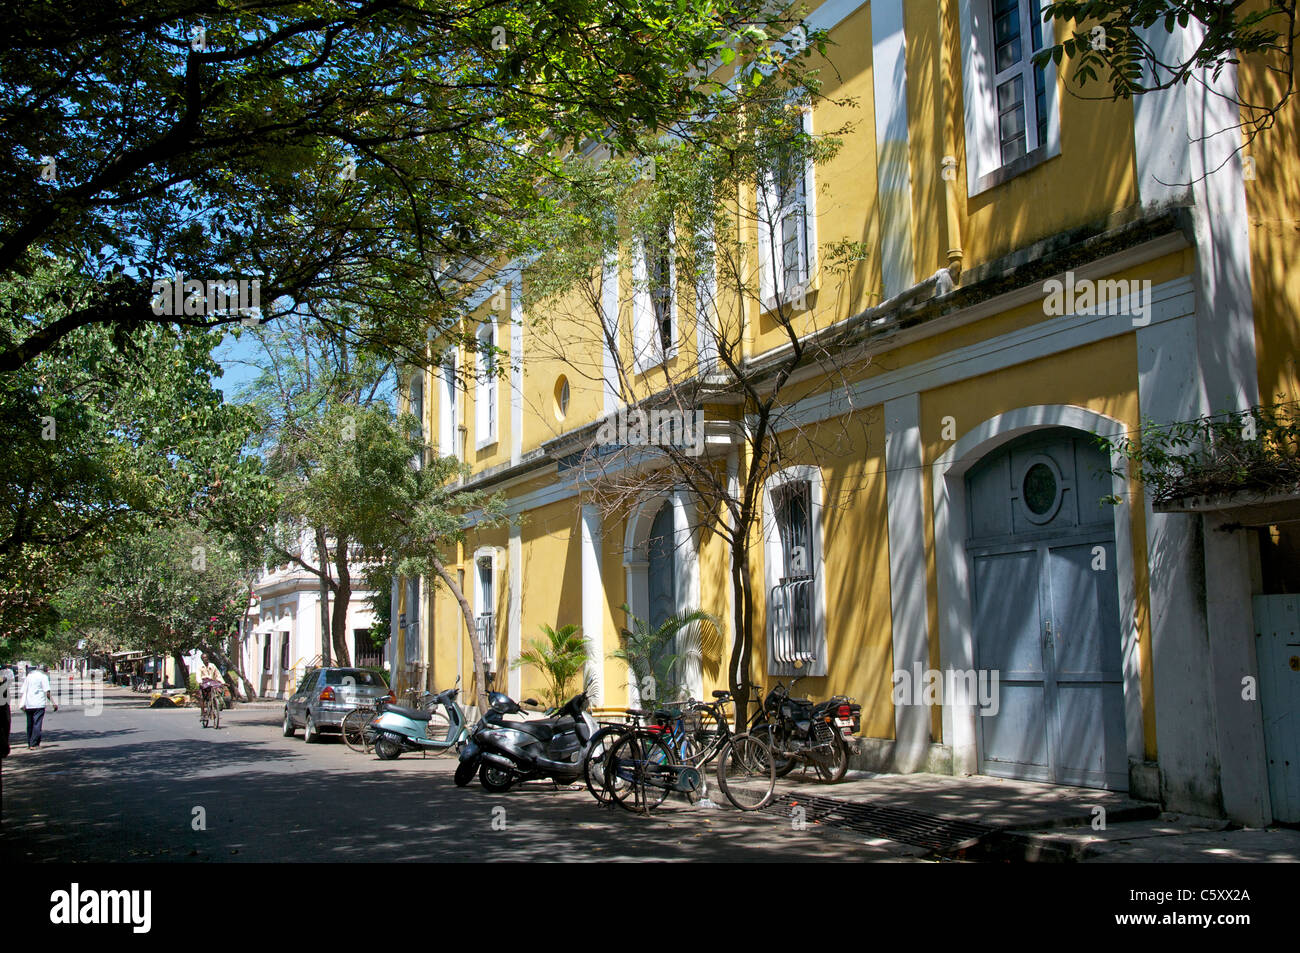 Typische Architektur in Französisch Quartal Pondicherry Tamil Nadu in Indien Stockfoto